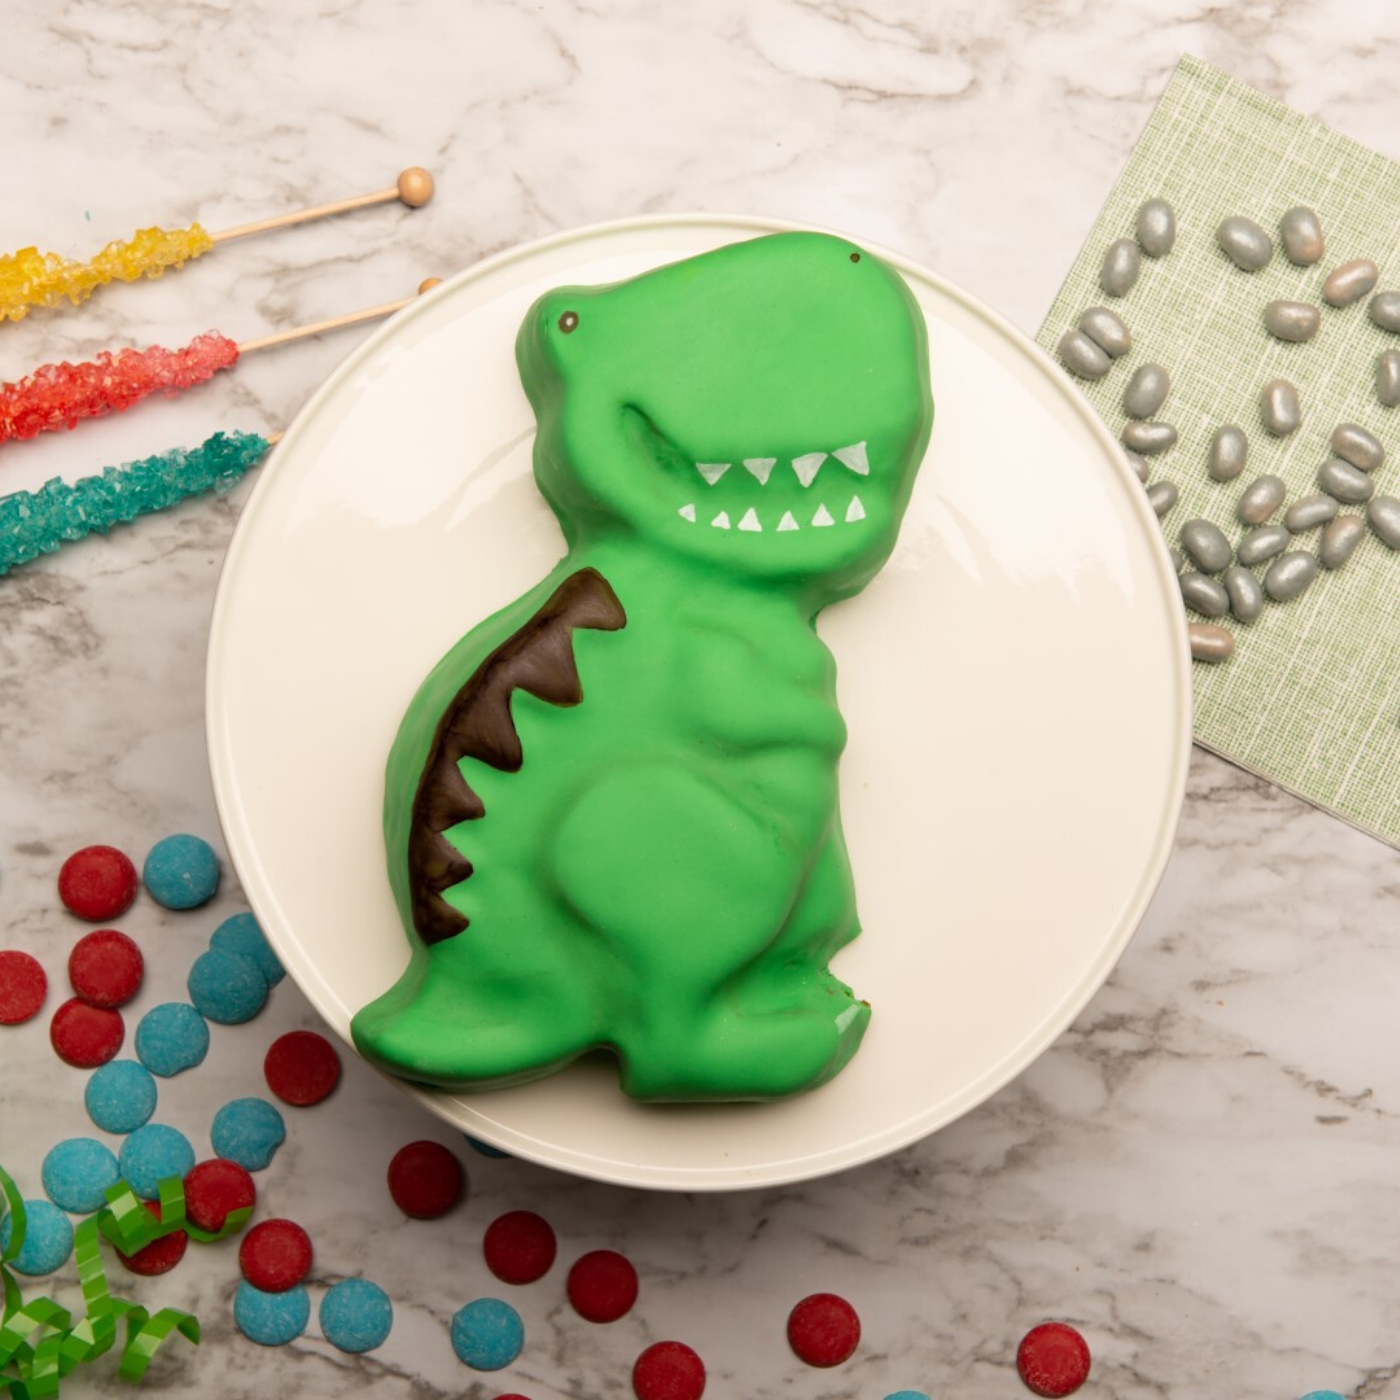 Decorated dinosaur shaped cake created using Dinosaur Large Cake Making Set